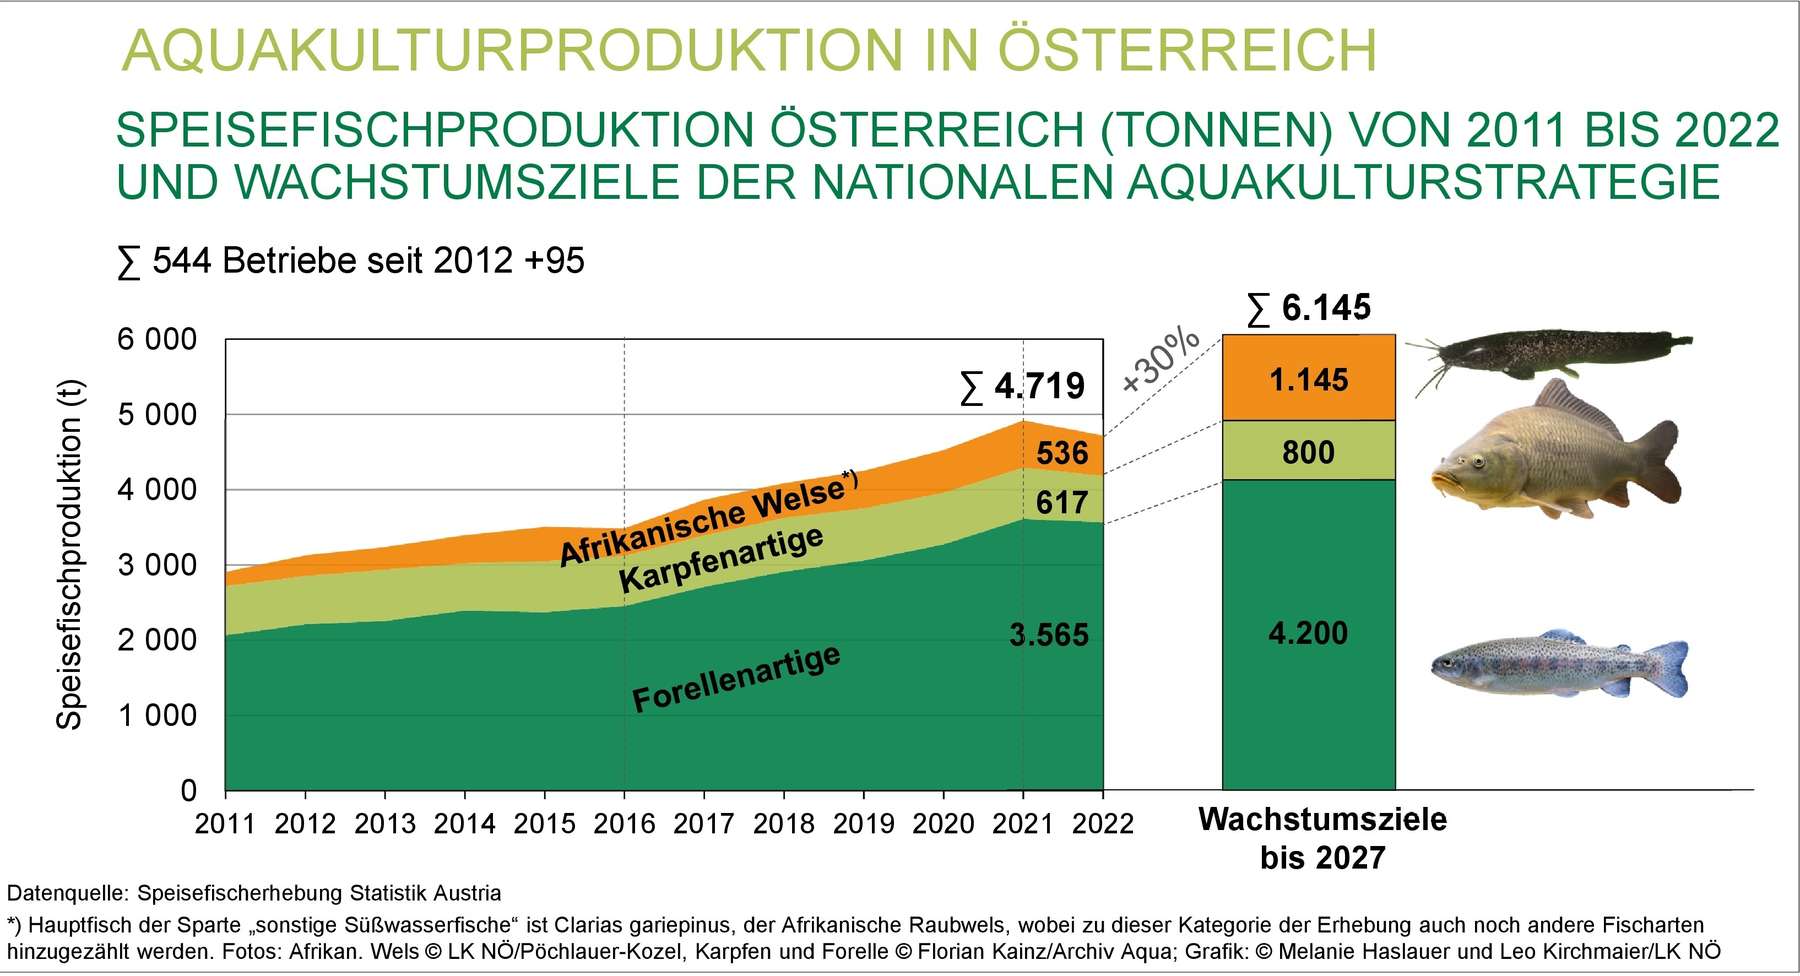 15 2022 Produktionszahlen und Wachstumsziele-002.jpg